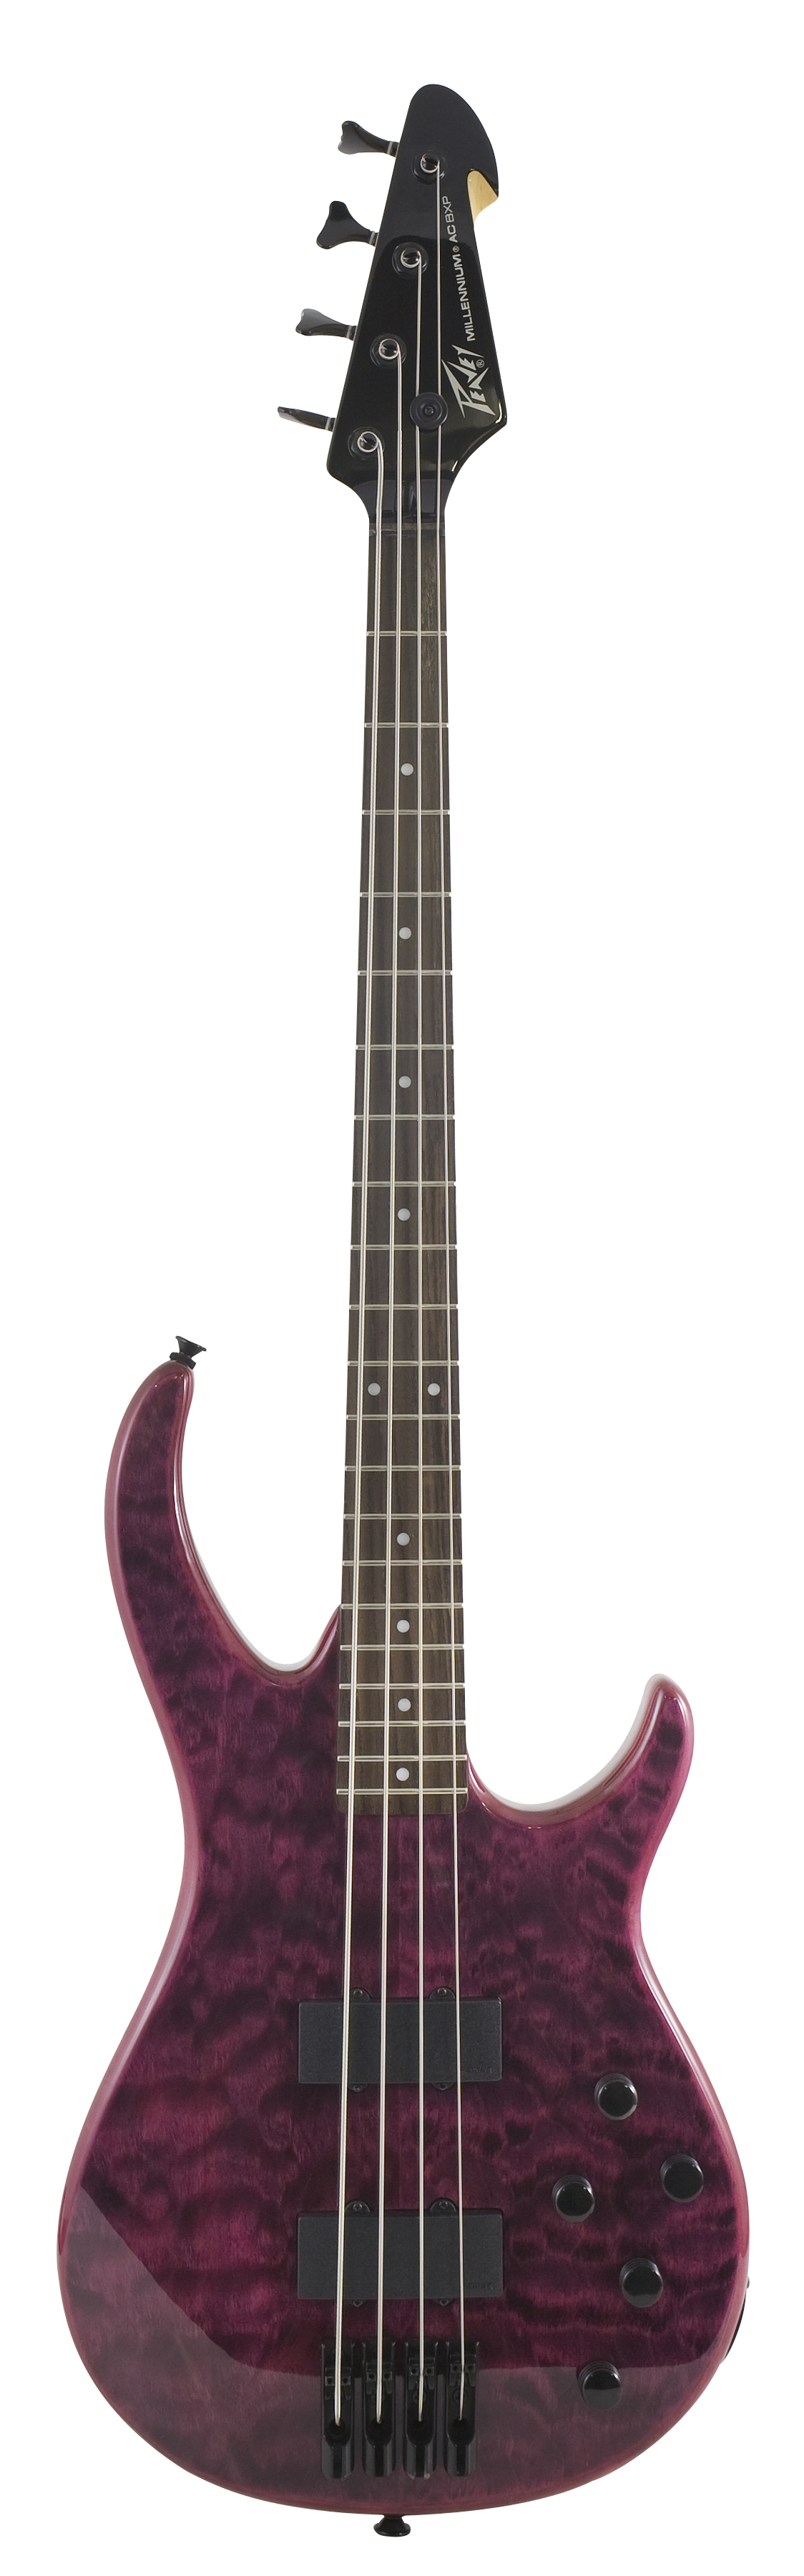 Peavey Peavey Millennium Bass 4 AC BXP Active Electric Bass Guitar - Transparent Black Violet